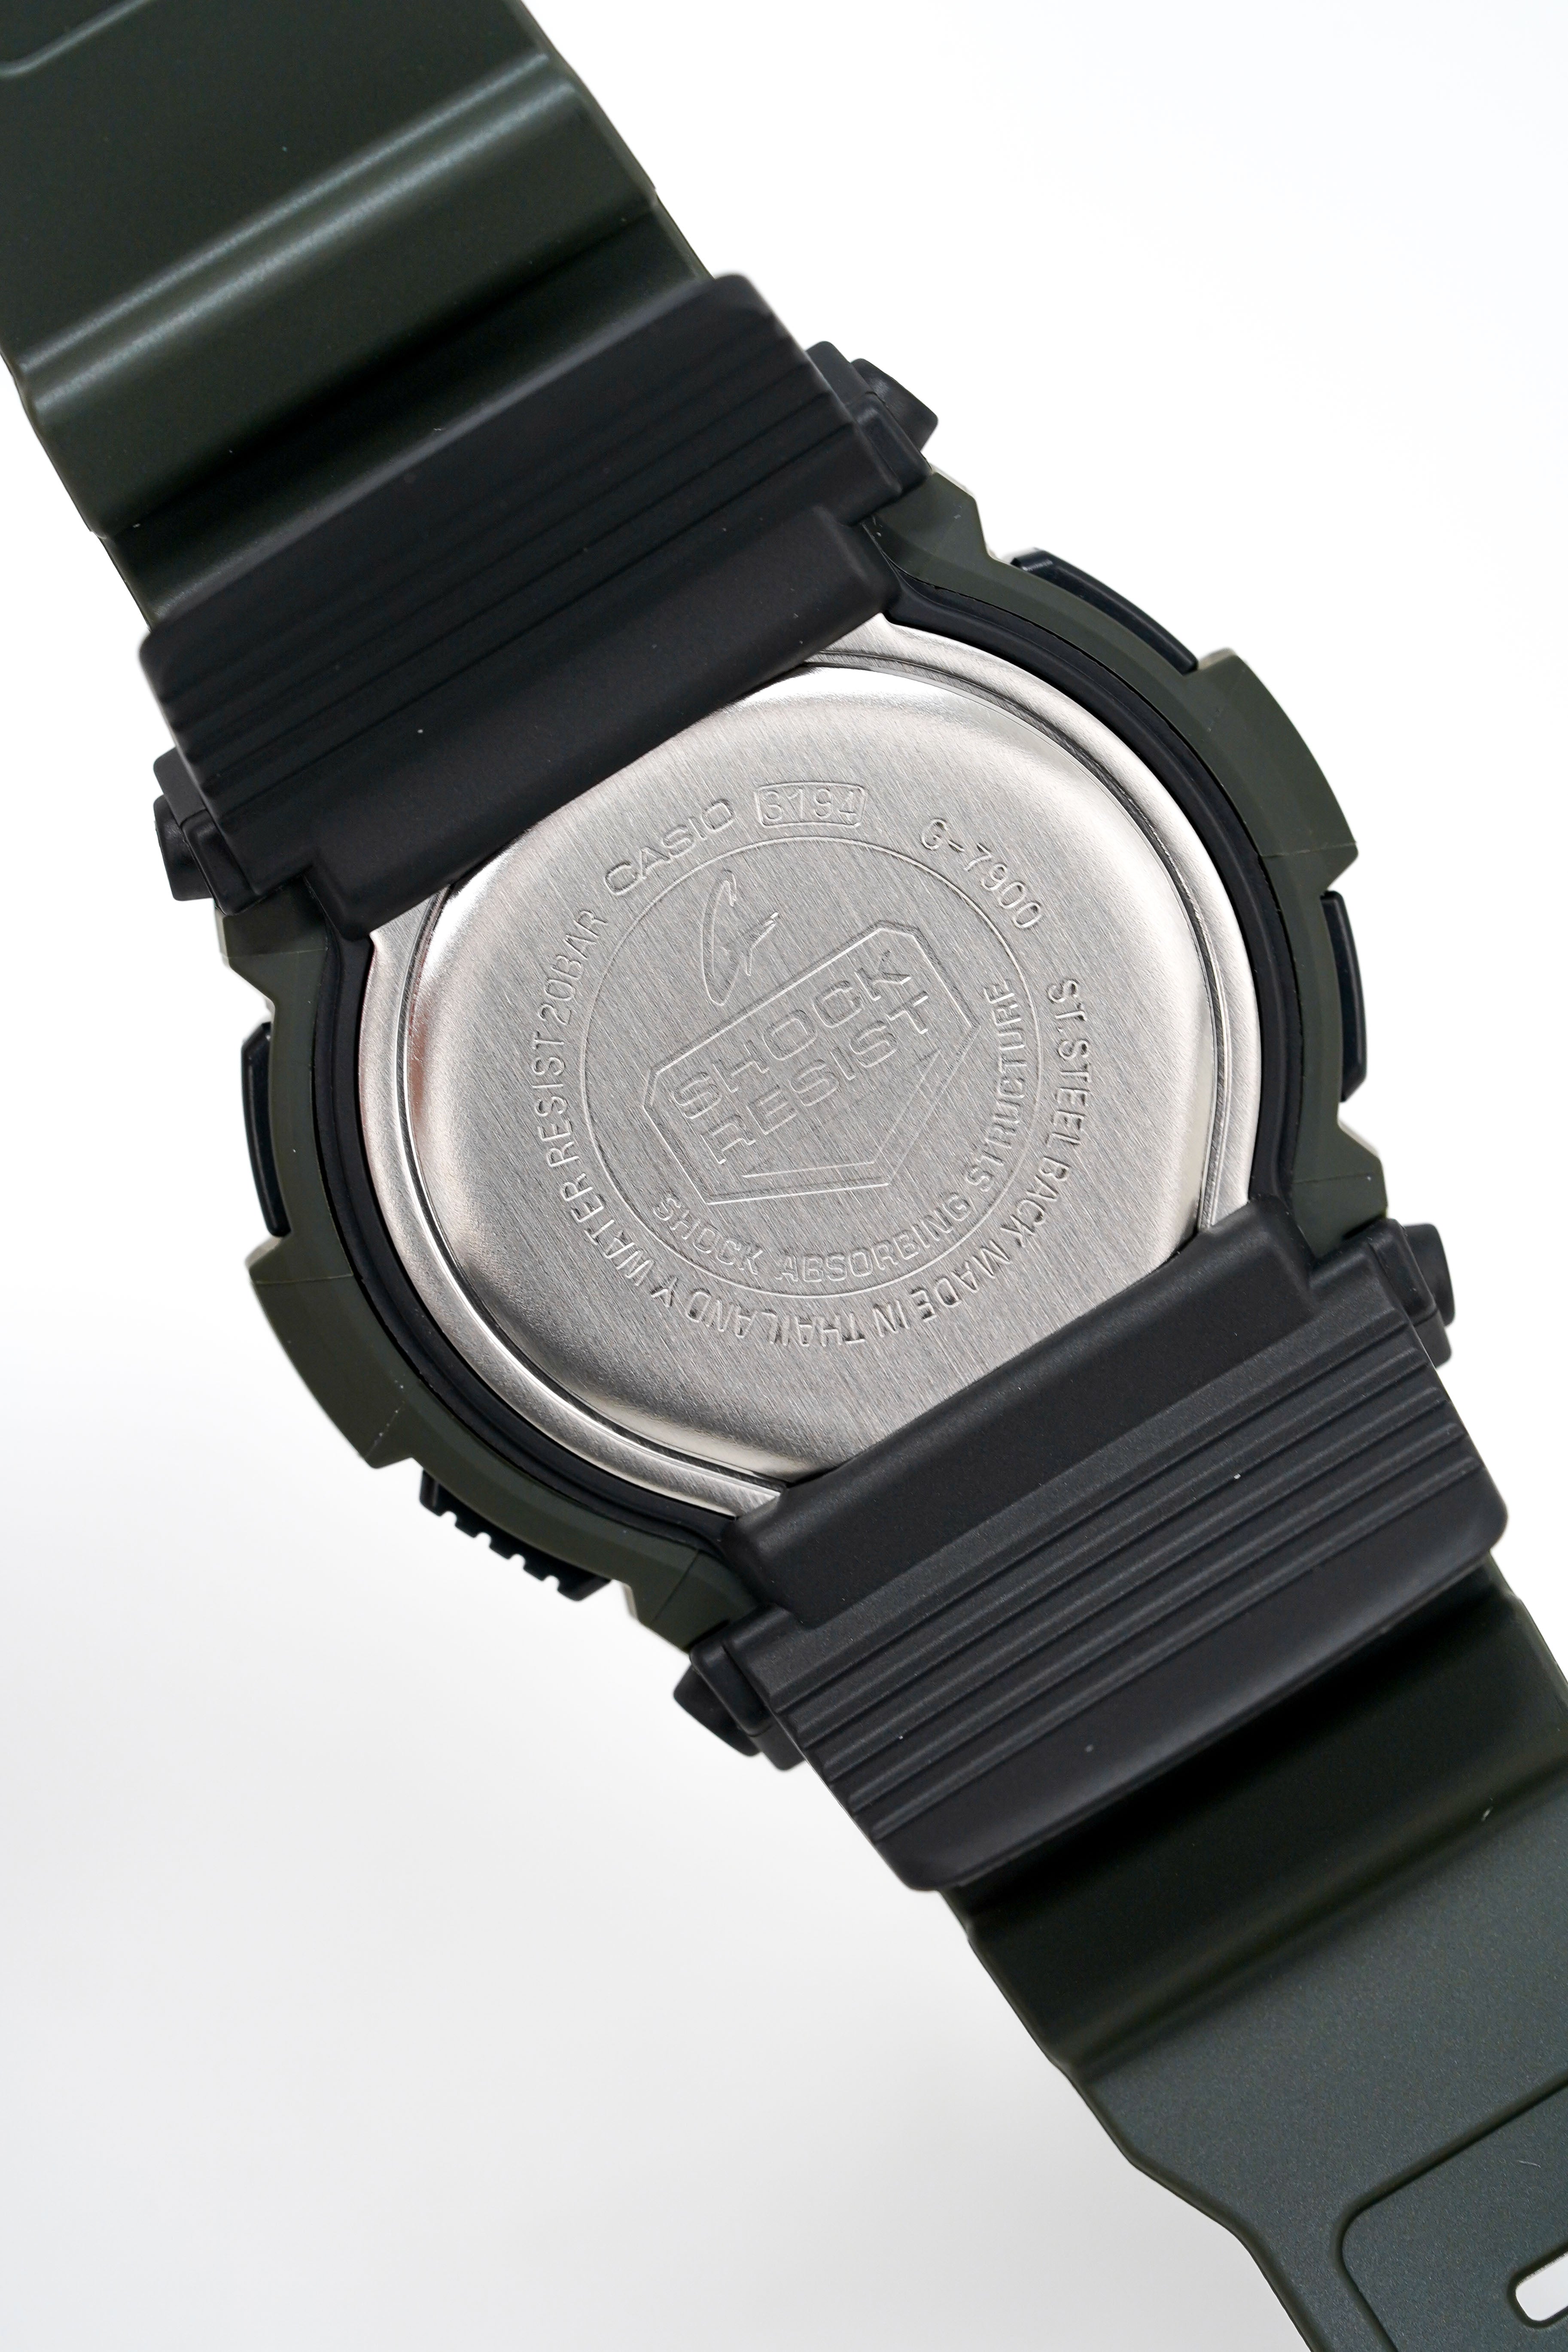 Casio G-Shock Watch Men's G-Rescue Black G-7900-3DR